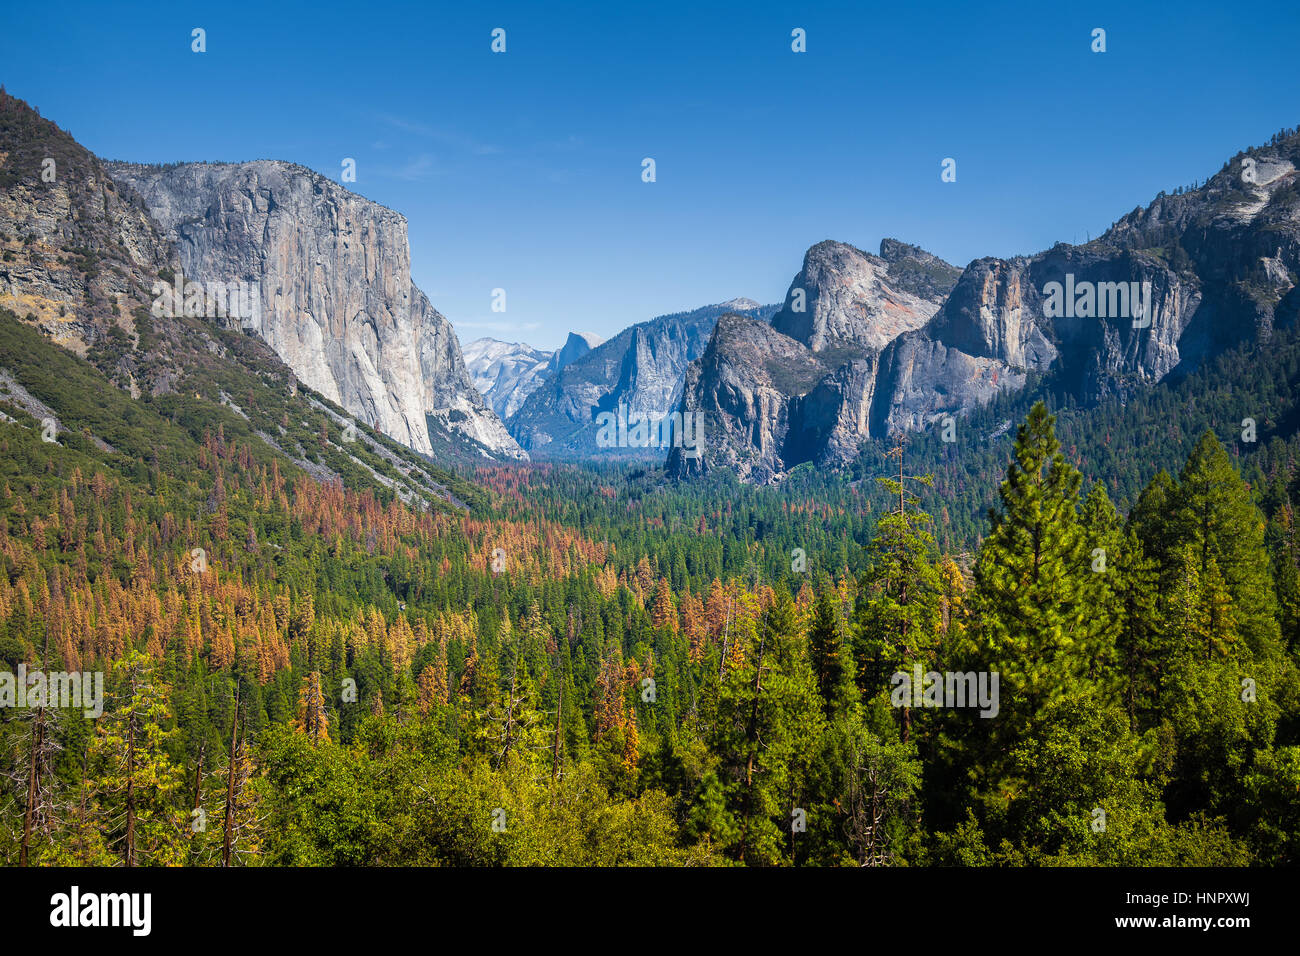 Tunnel-Standardansicht des malerischen Yosemite Valley mit berühmten El Capitan und Half Dome Klettern Gipfel an einem schönen Tag mit blauem Himmel, California Stockfoto